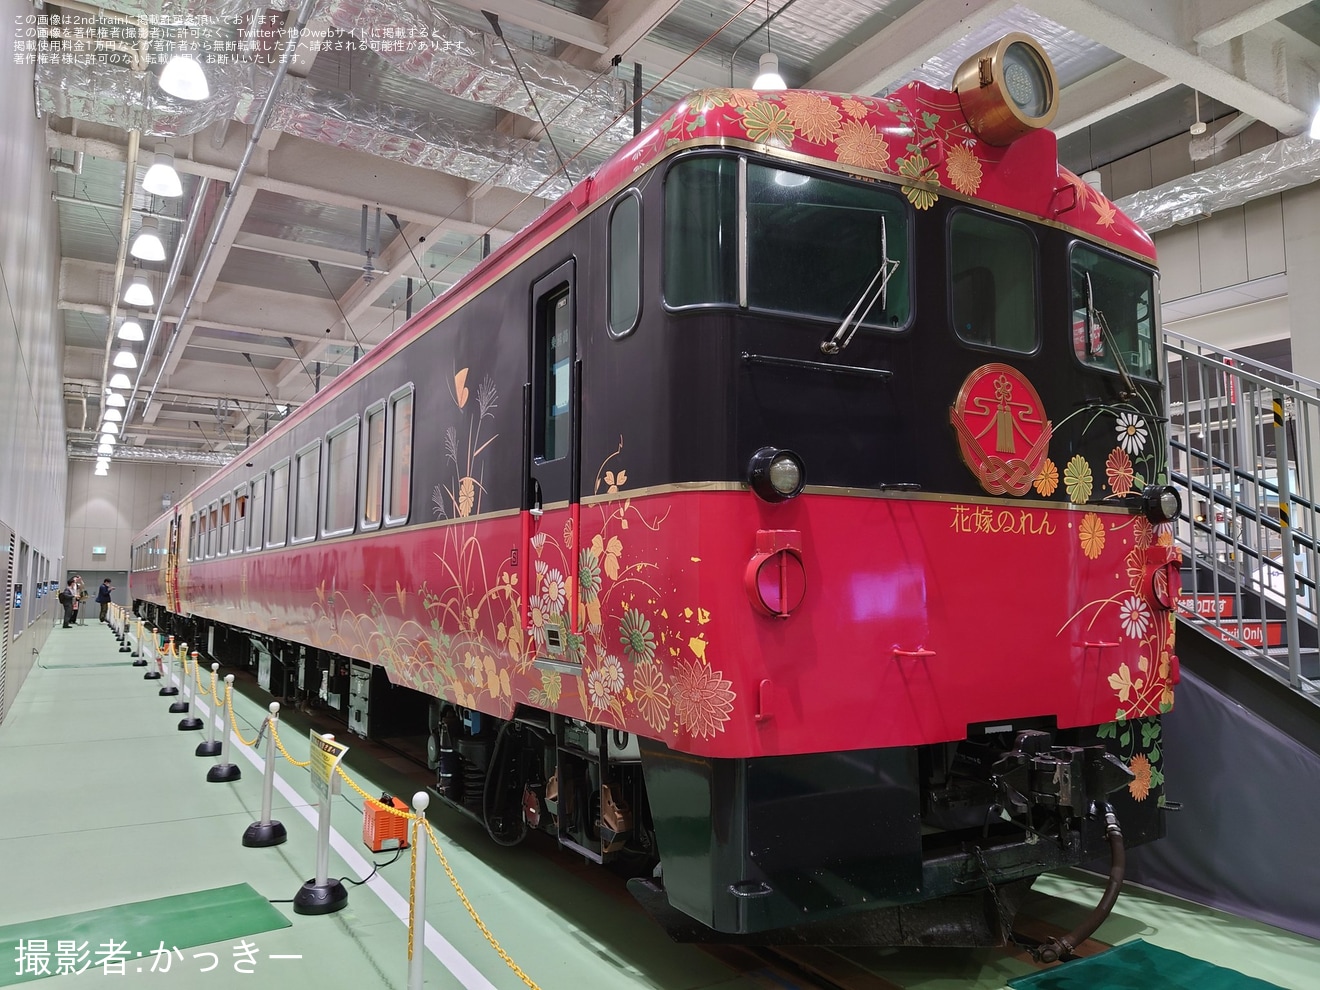 【JR西】京都鉄道博物館「花嫁のれん」特別展示の拡大写真